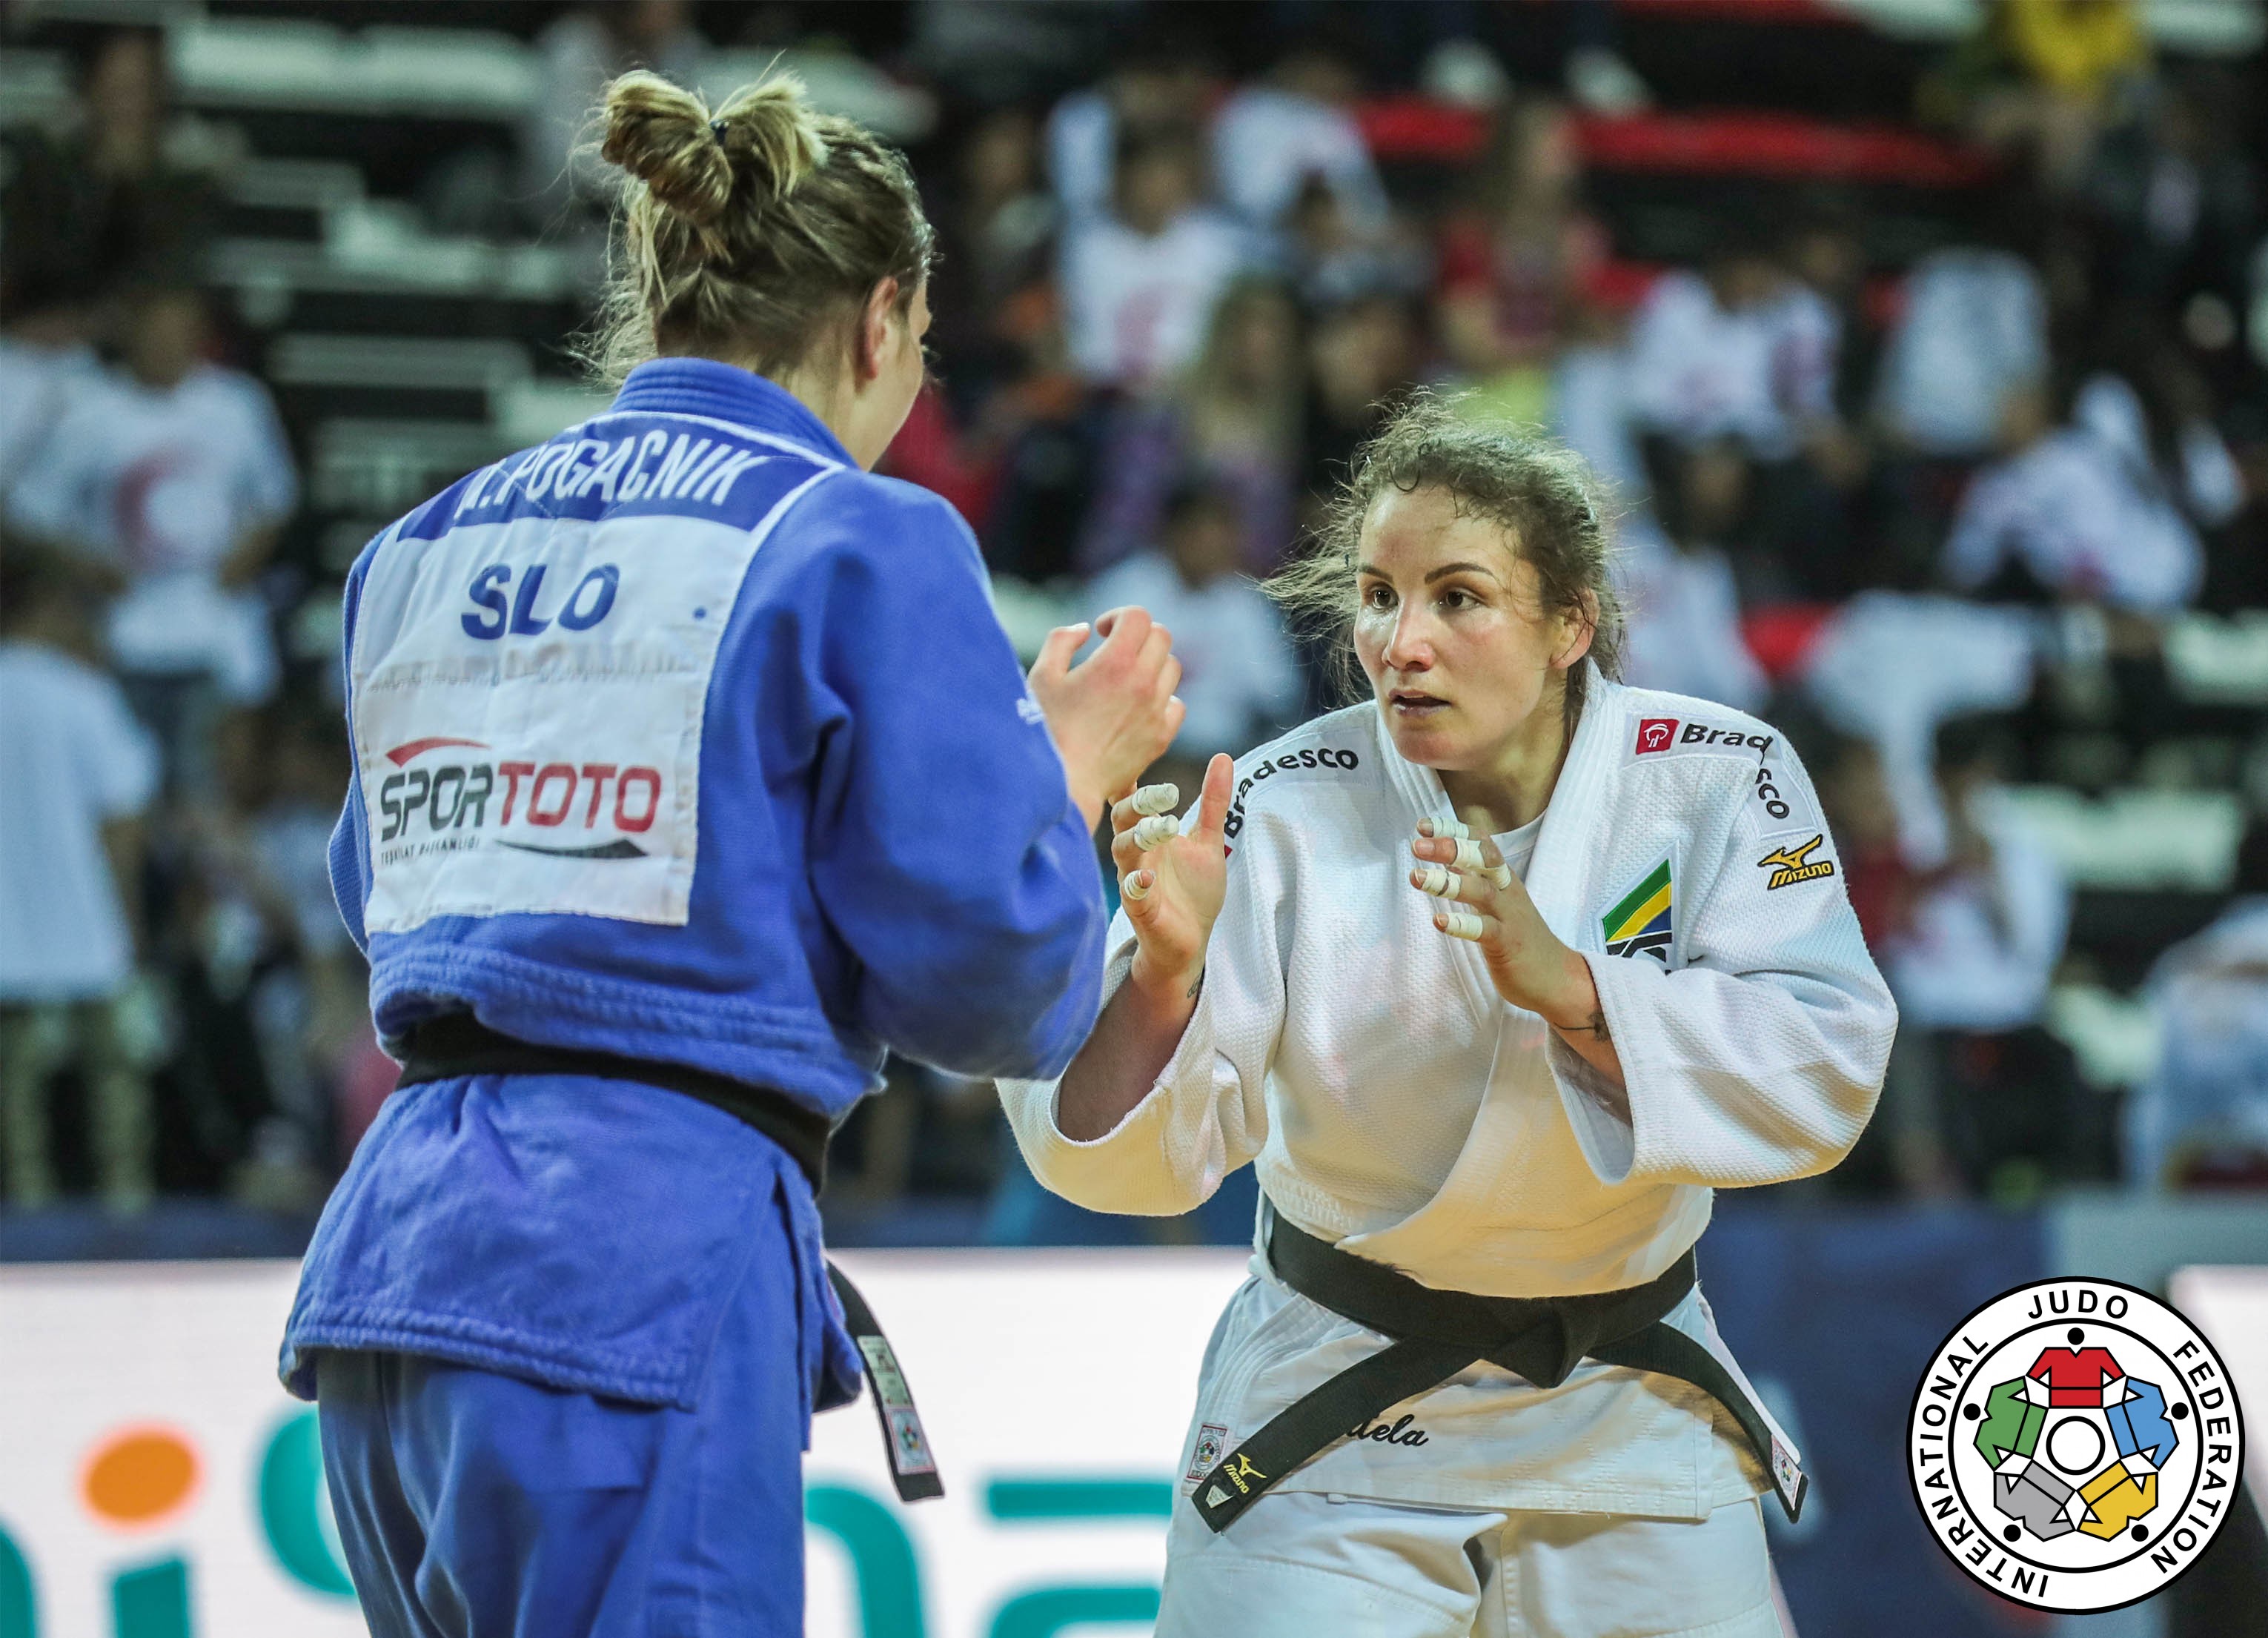 Maria Portela é vice-campeã do Grand Prix de Antalya e equipe brasileira de Judô soma segunda medalha